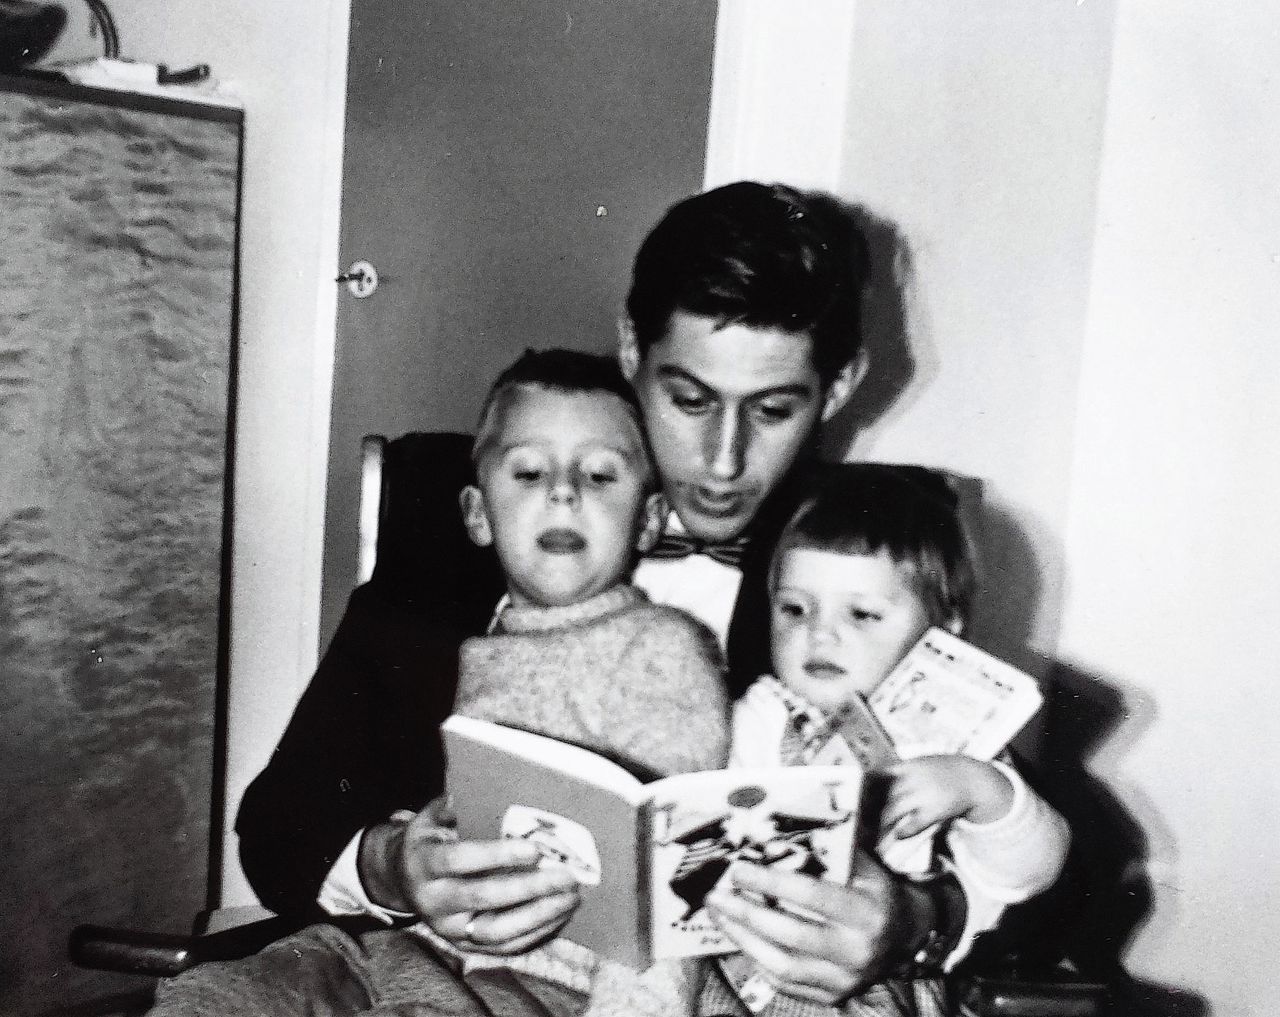 Moerenhout omstreeks 1960, met twee van zijn drie kinderen.